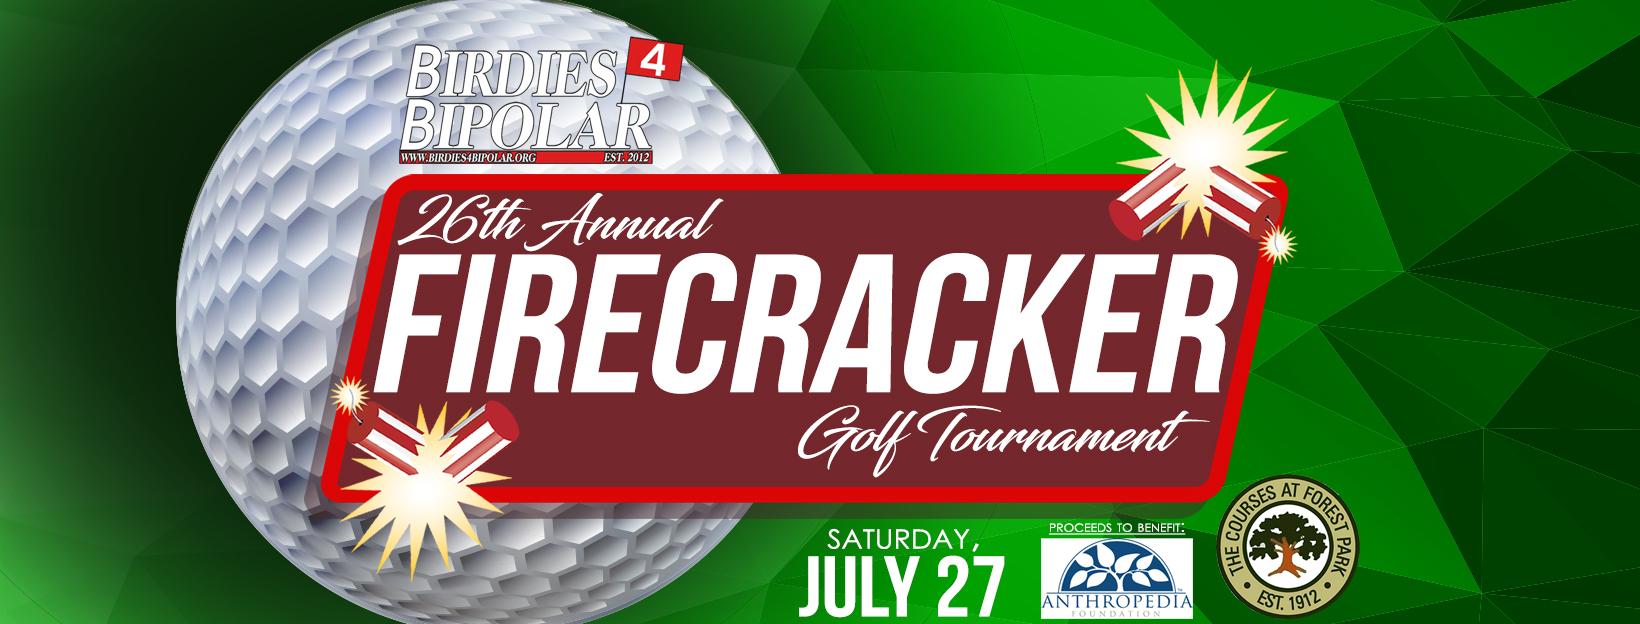 2019 Firecracker Golf Tournament